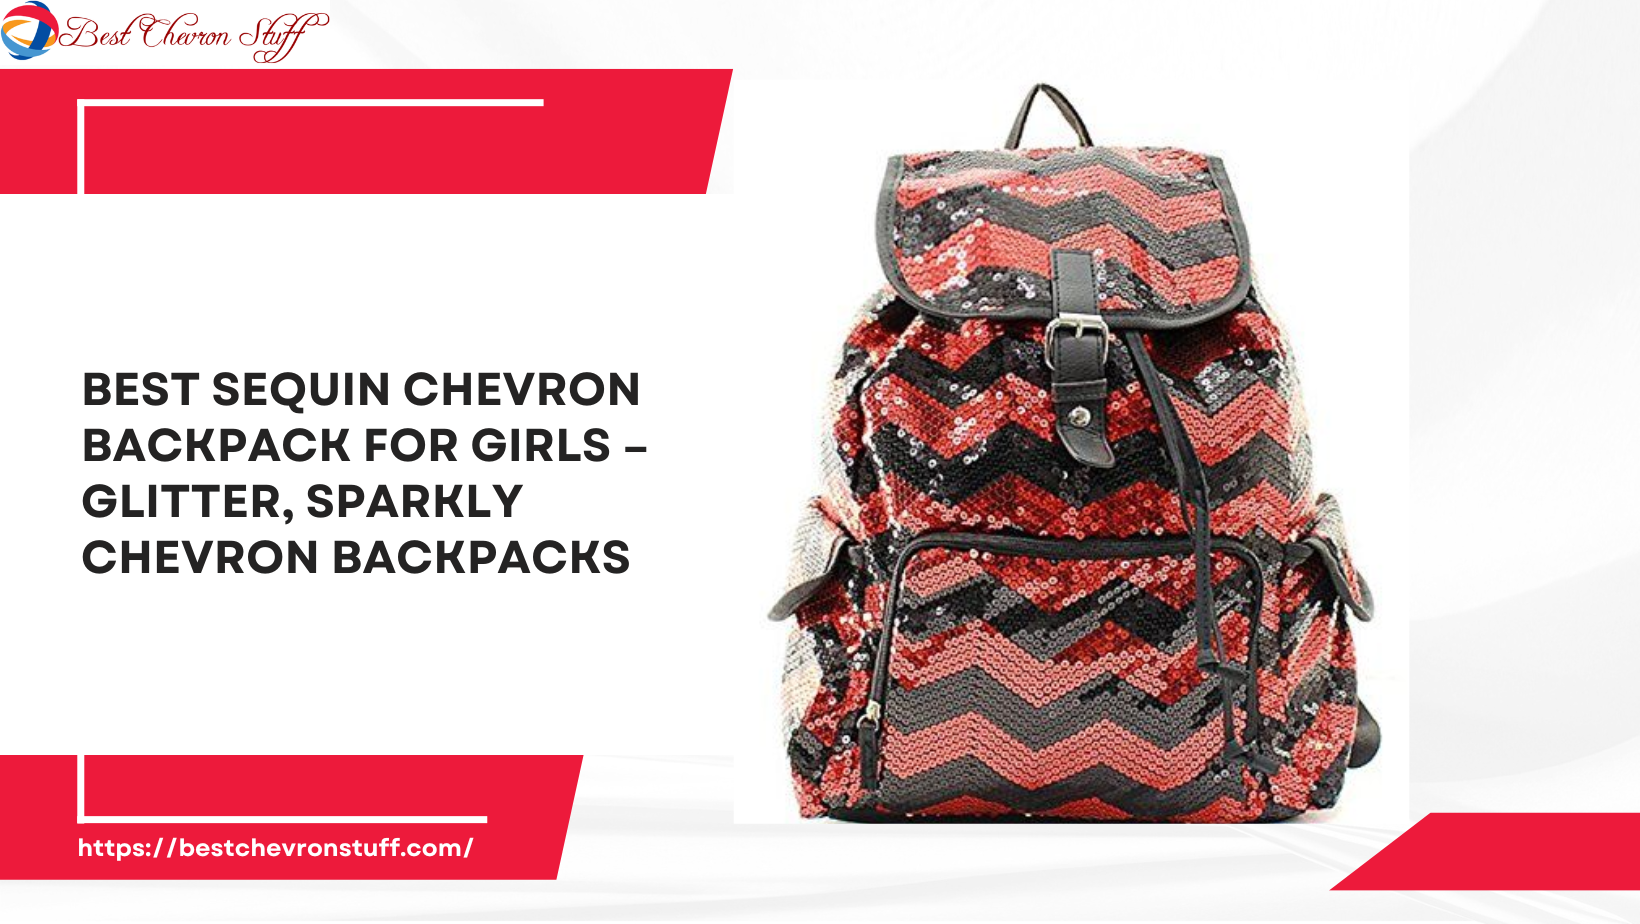 Best Sequin Chevron Backpack for Girls – Glitter, Sparkly Chevron Backpacks